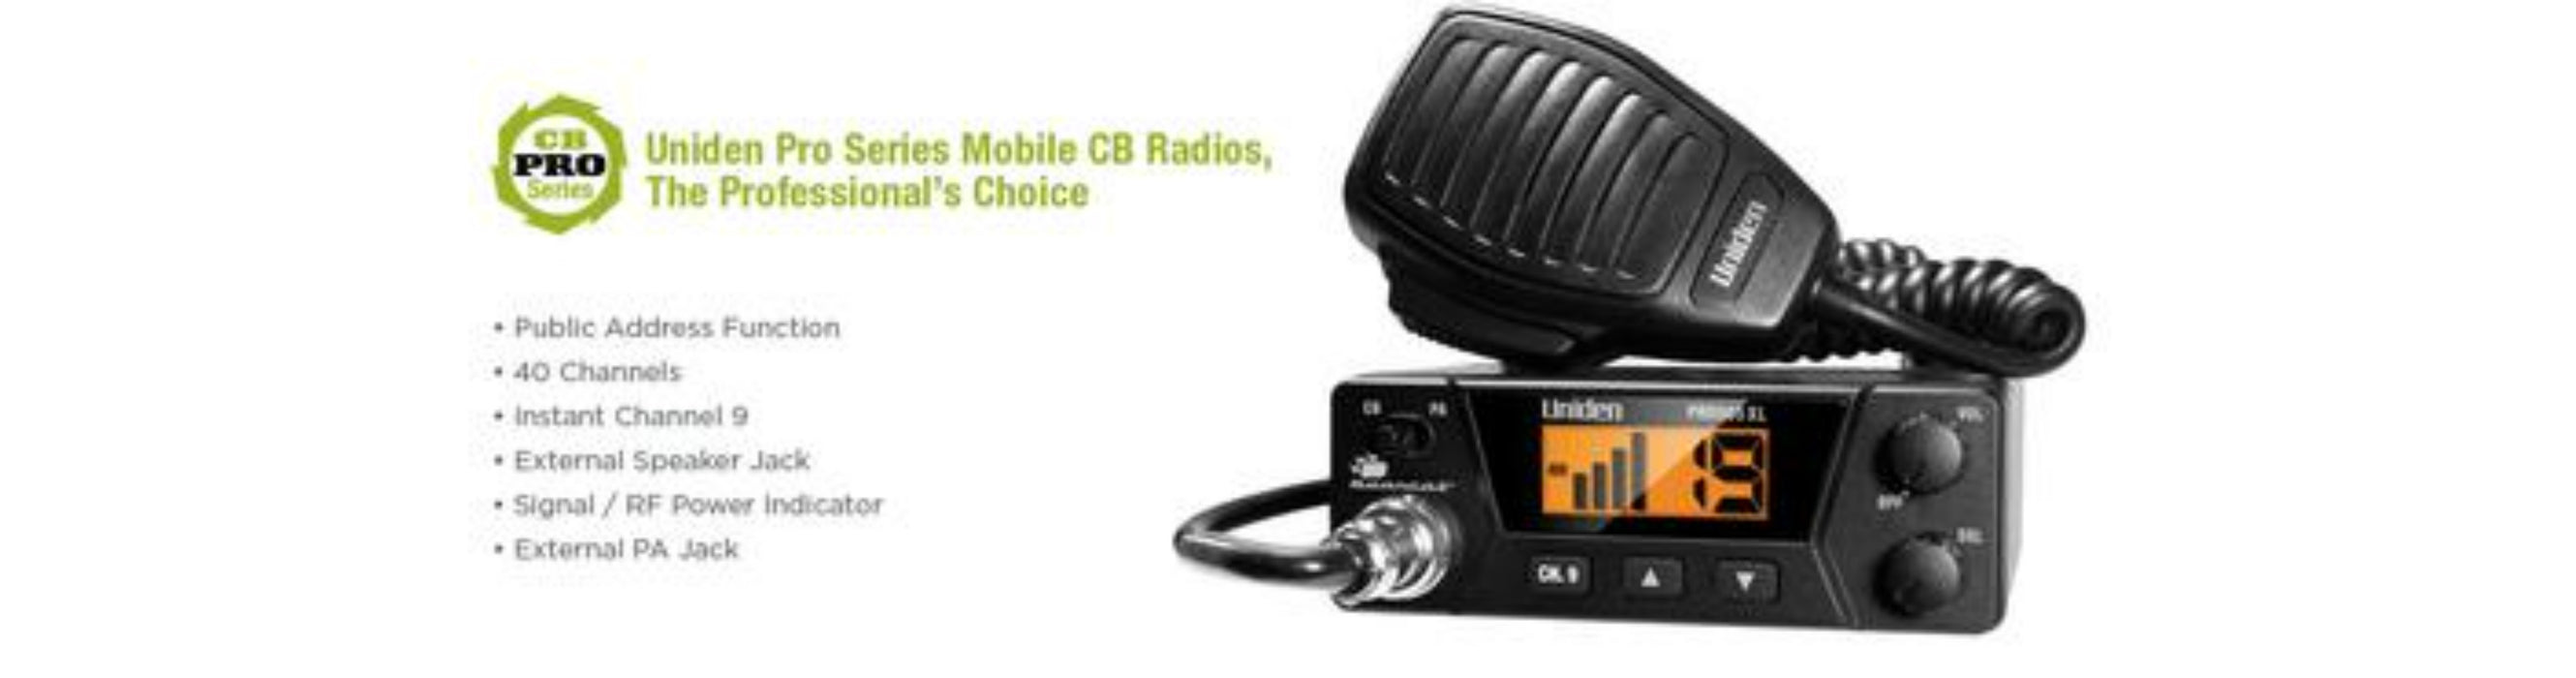 2 40 channel compact mobile cb radio PRO505XL cb radio uniden